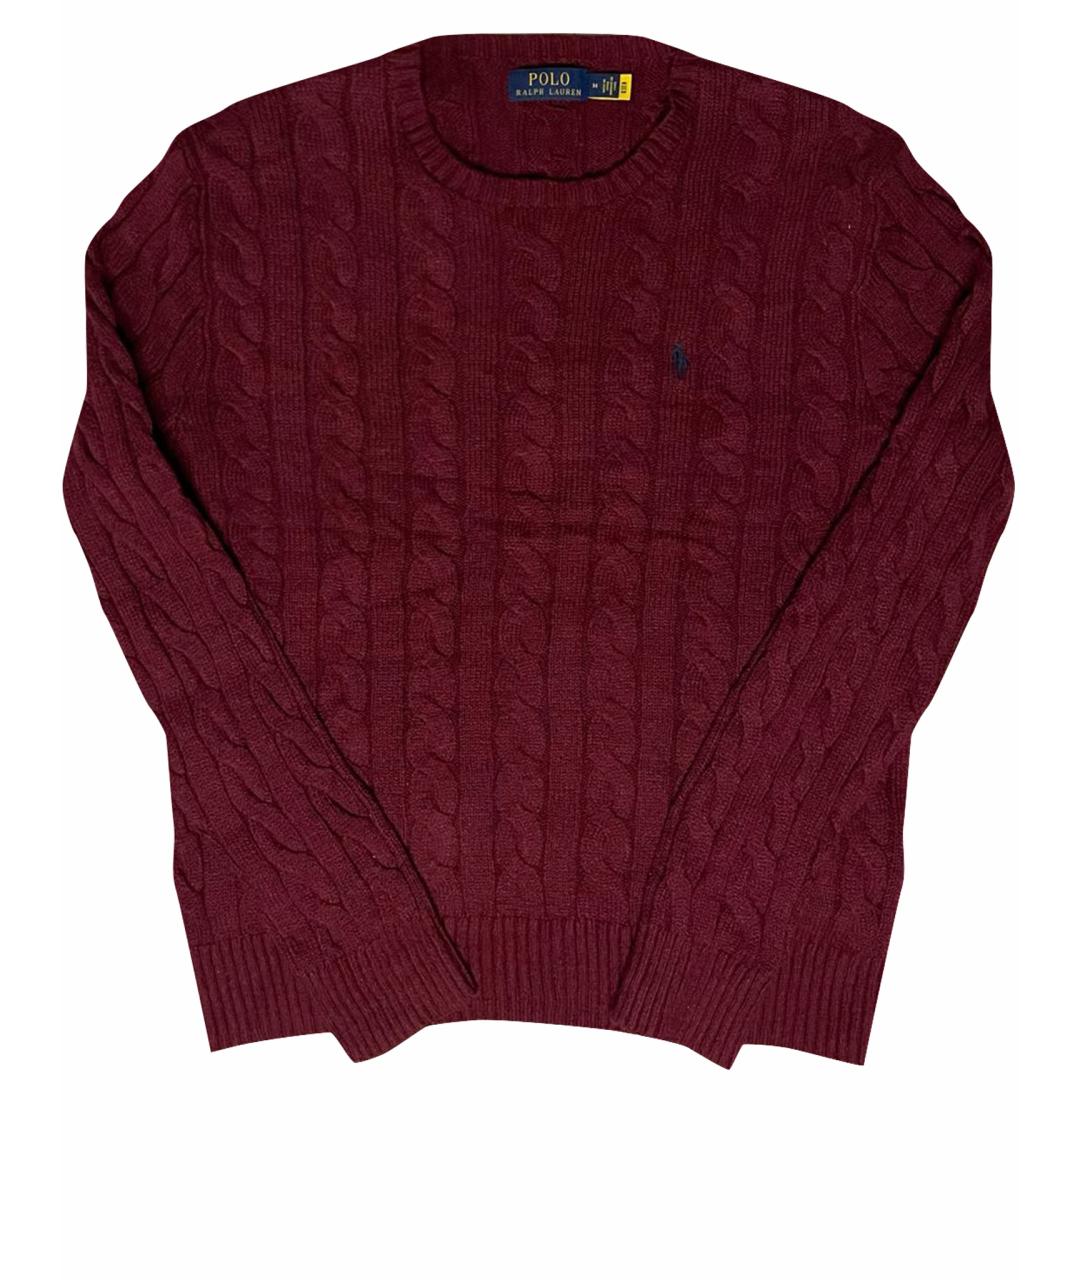 POLO RALPH LAUREN Бордовый хлопковый джемпер / свитер, фото 1